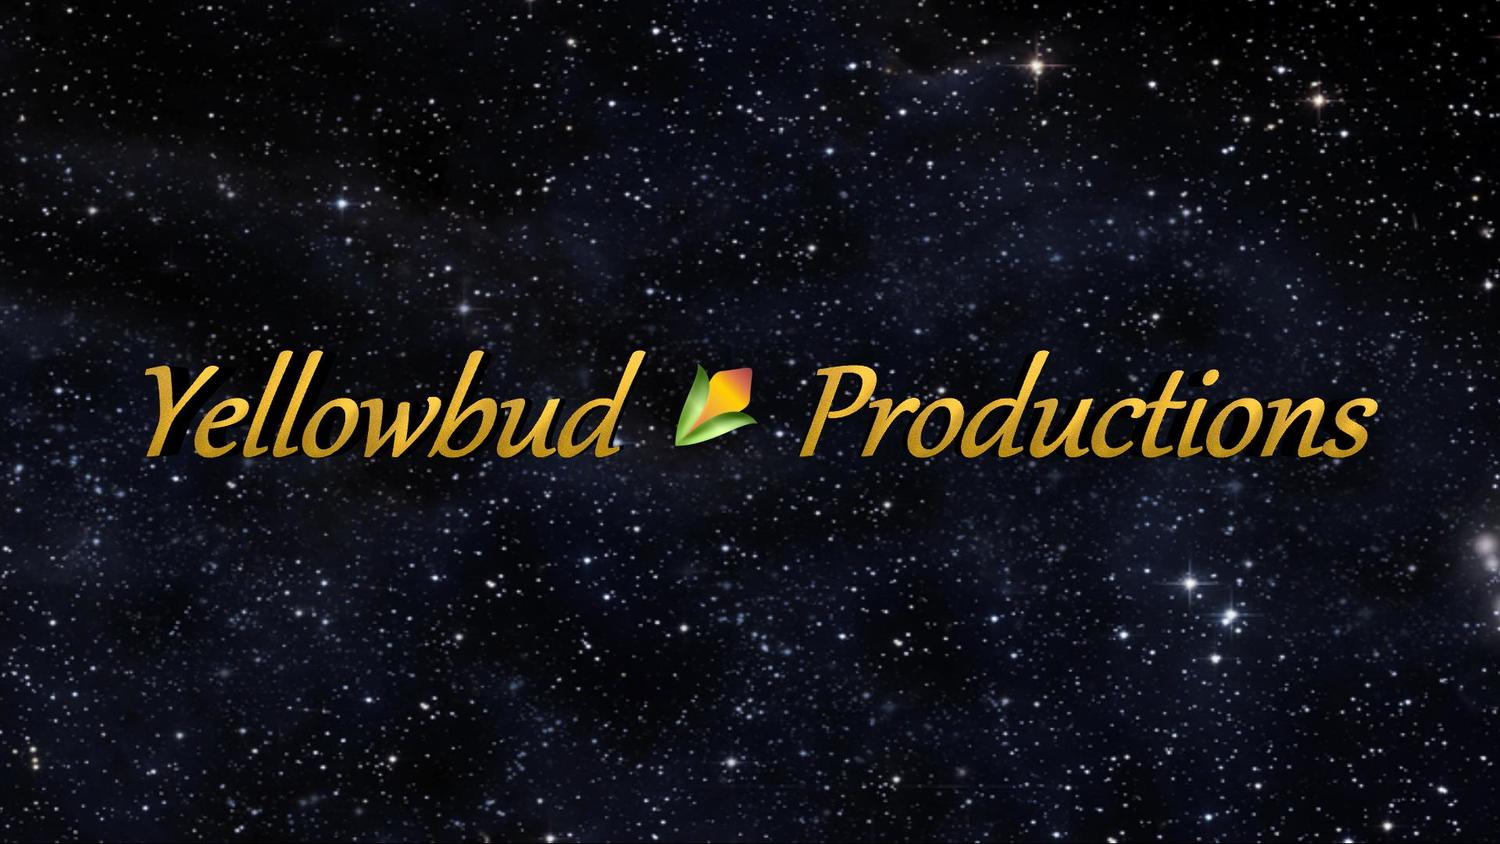 Yellowbud Productions